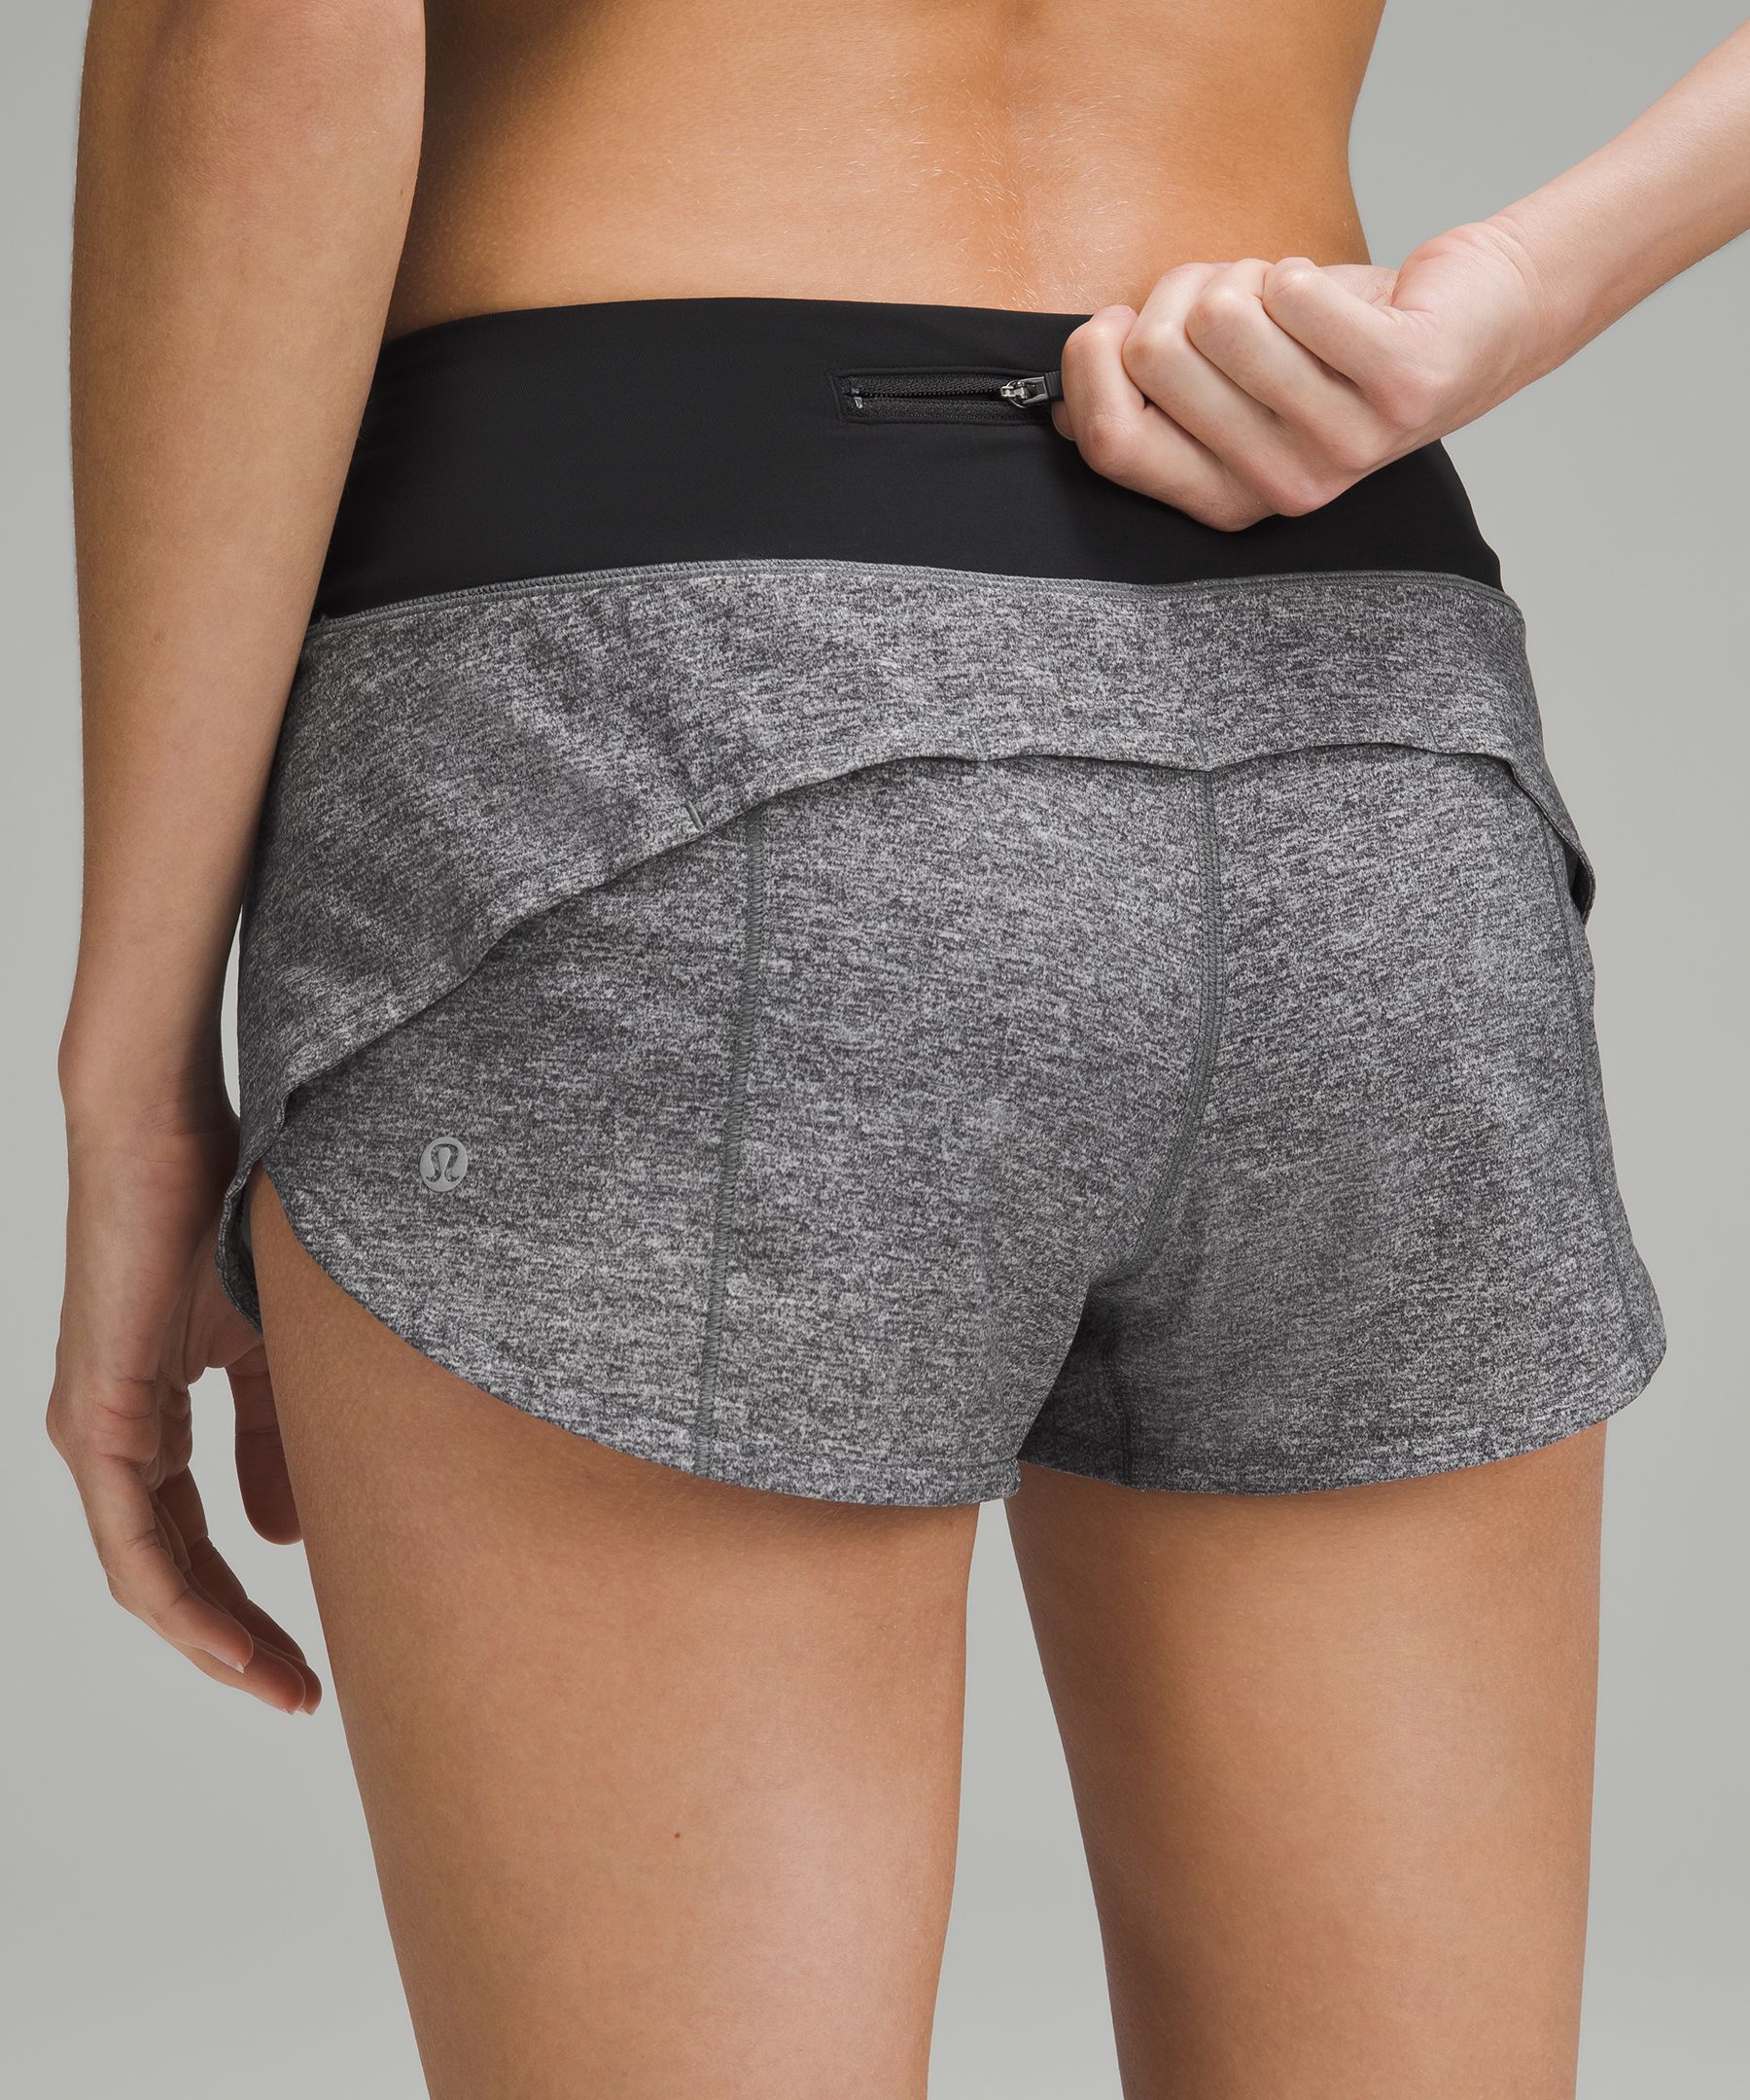 Lululemon Speed Up Shorts 2.5 Black Size 6 - $40 (41% Off Retail) - From  Elyse